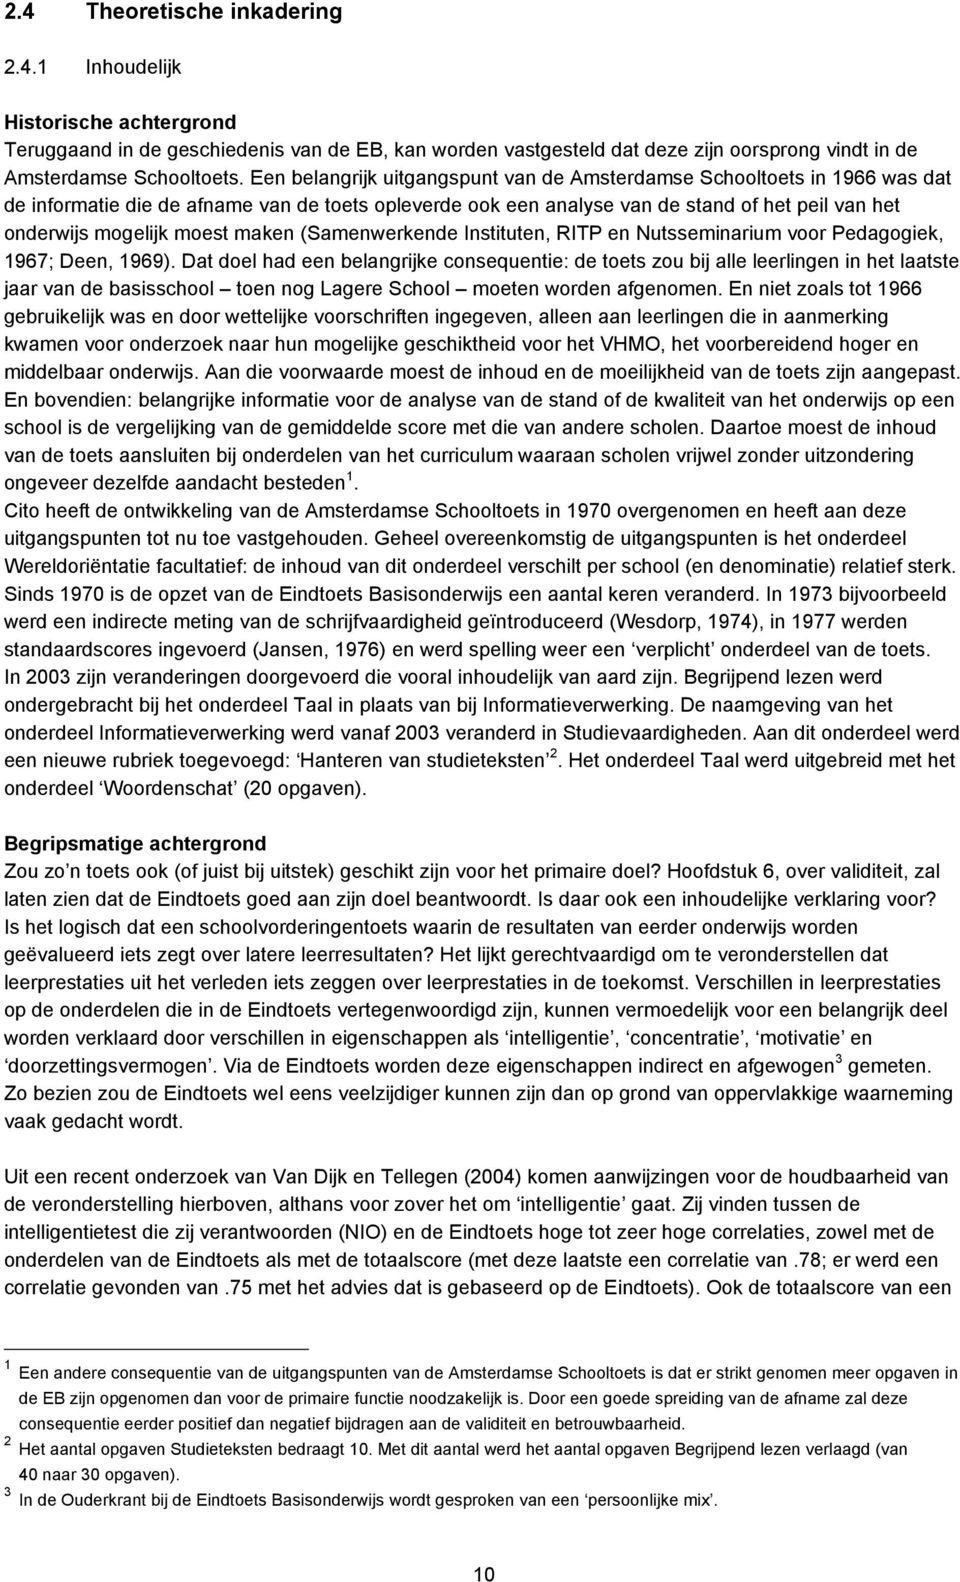 maken (Samenwerkende Instituten, RITP en Nutsseminarium voor Pedagogiek, 1967; Deen, 1969).